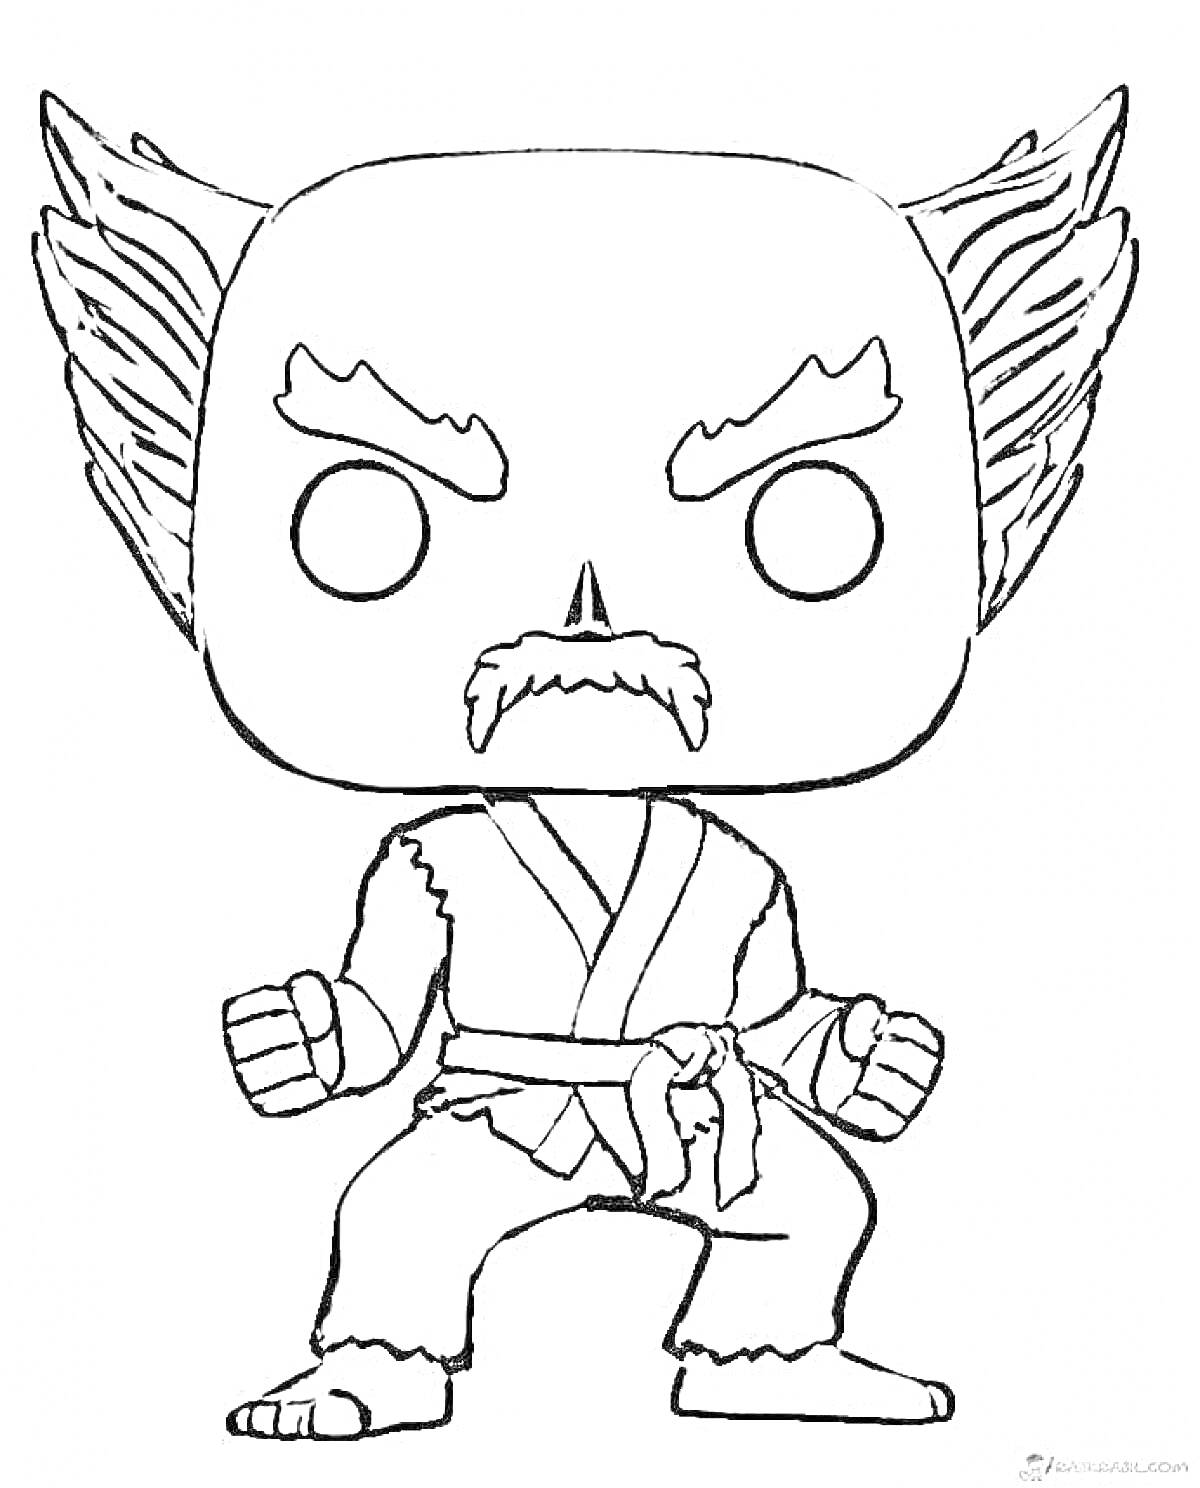 Раскраска Funko Pop воина с усами и бородой, в боевой стойке, с характерной прической и в кимоно.